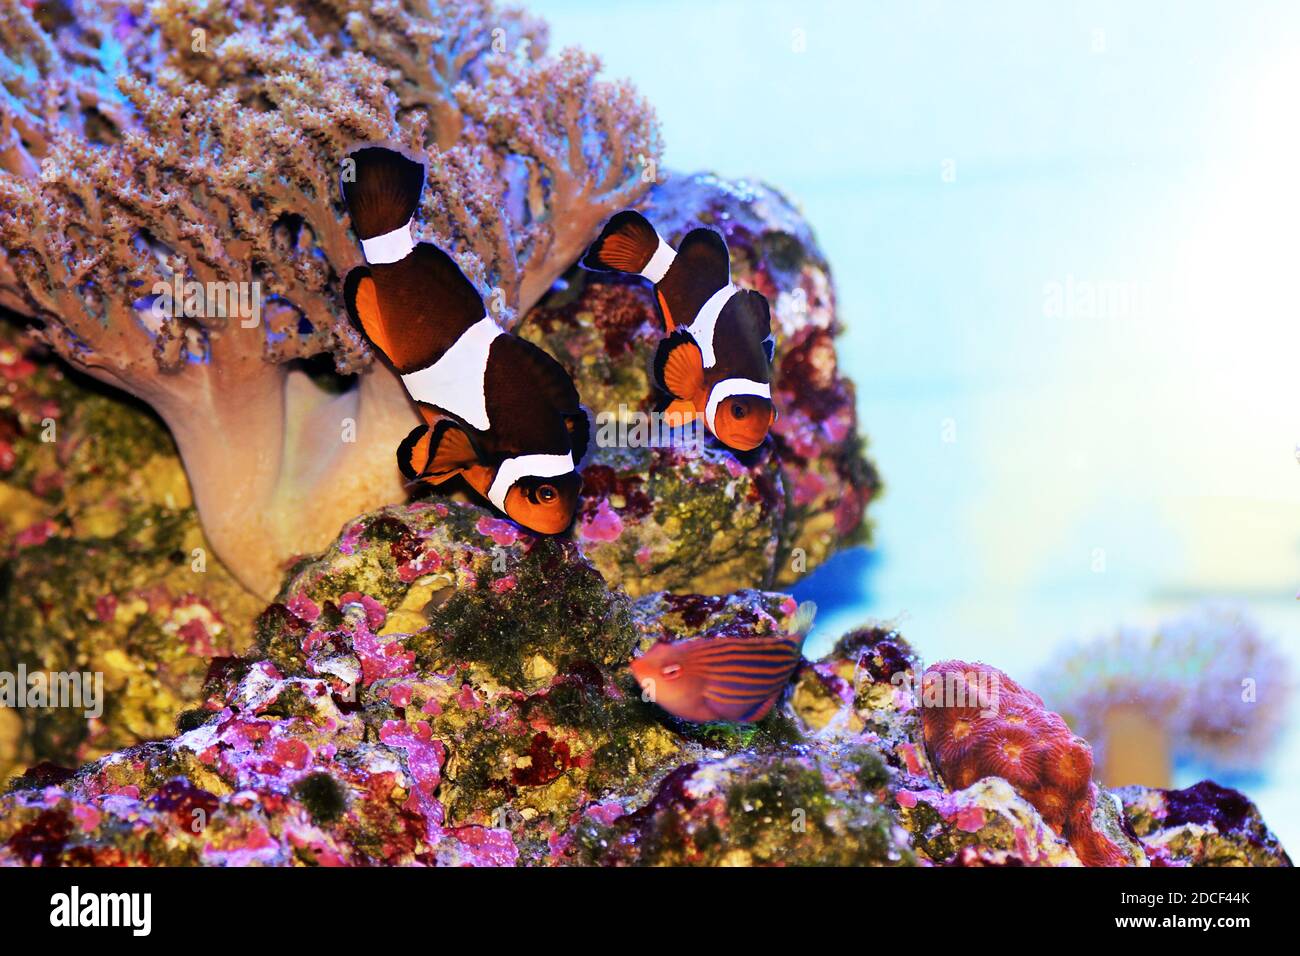 Amphiprion ocellaris Clownfish - der beliebteste Salzwasserfisch für Korallenriff Aquariumbecken Stockfoto